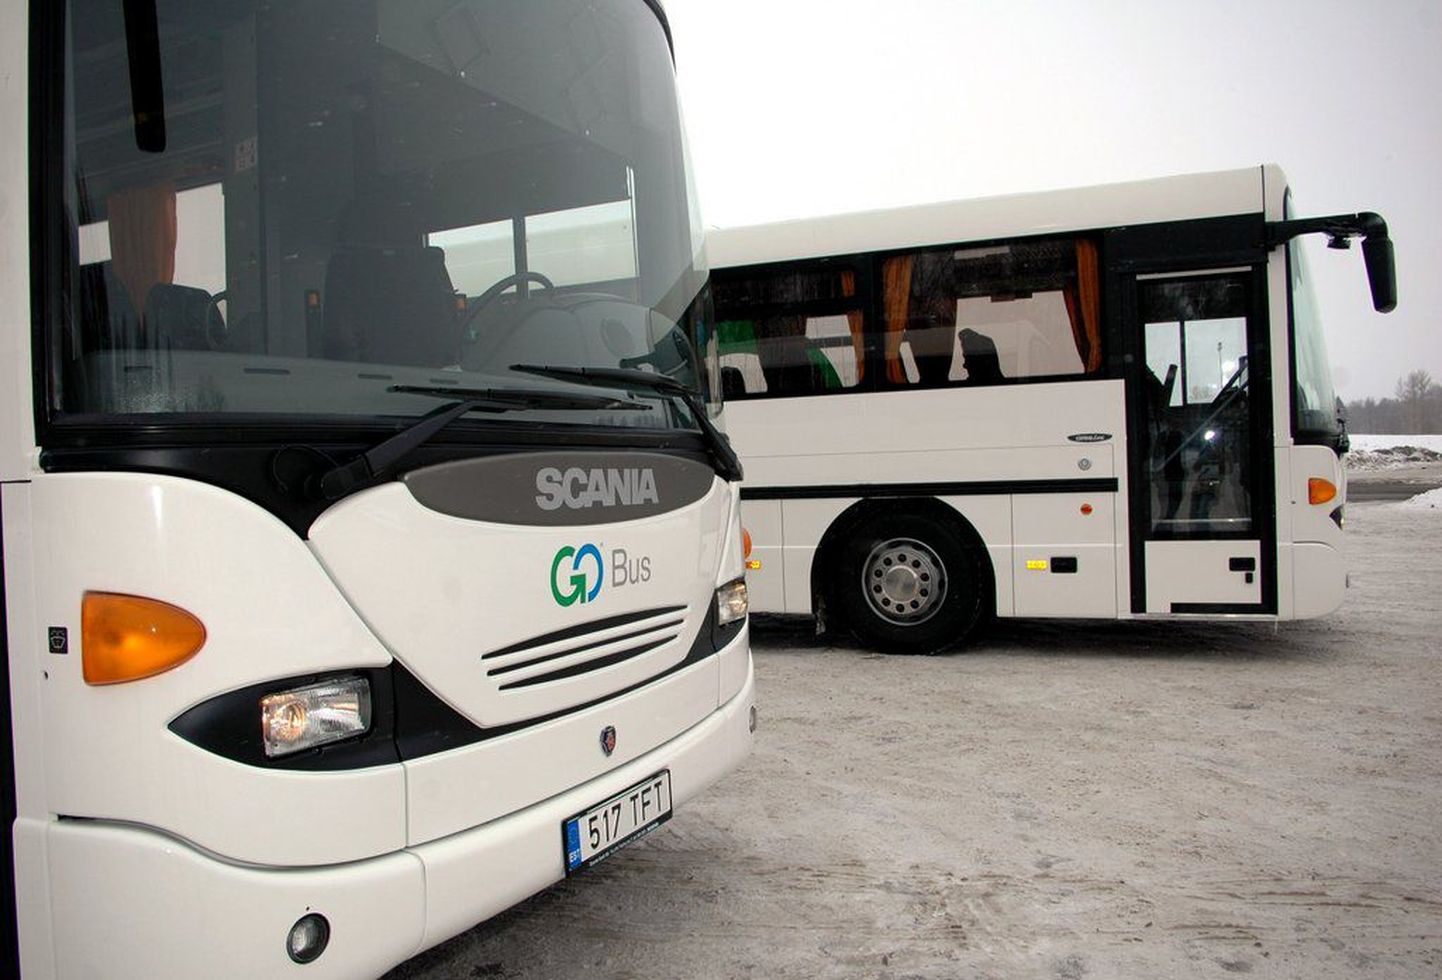 Автобусы фирмы GoBus.